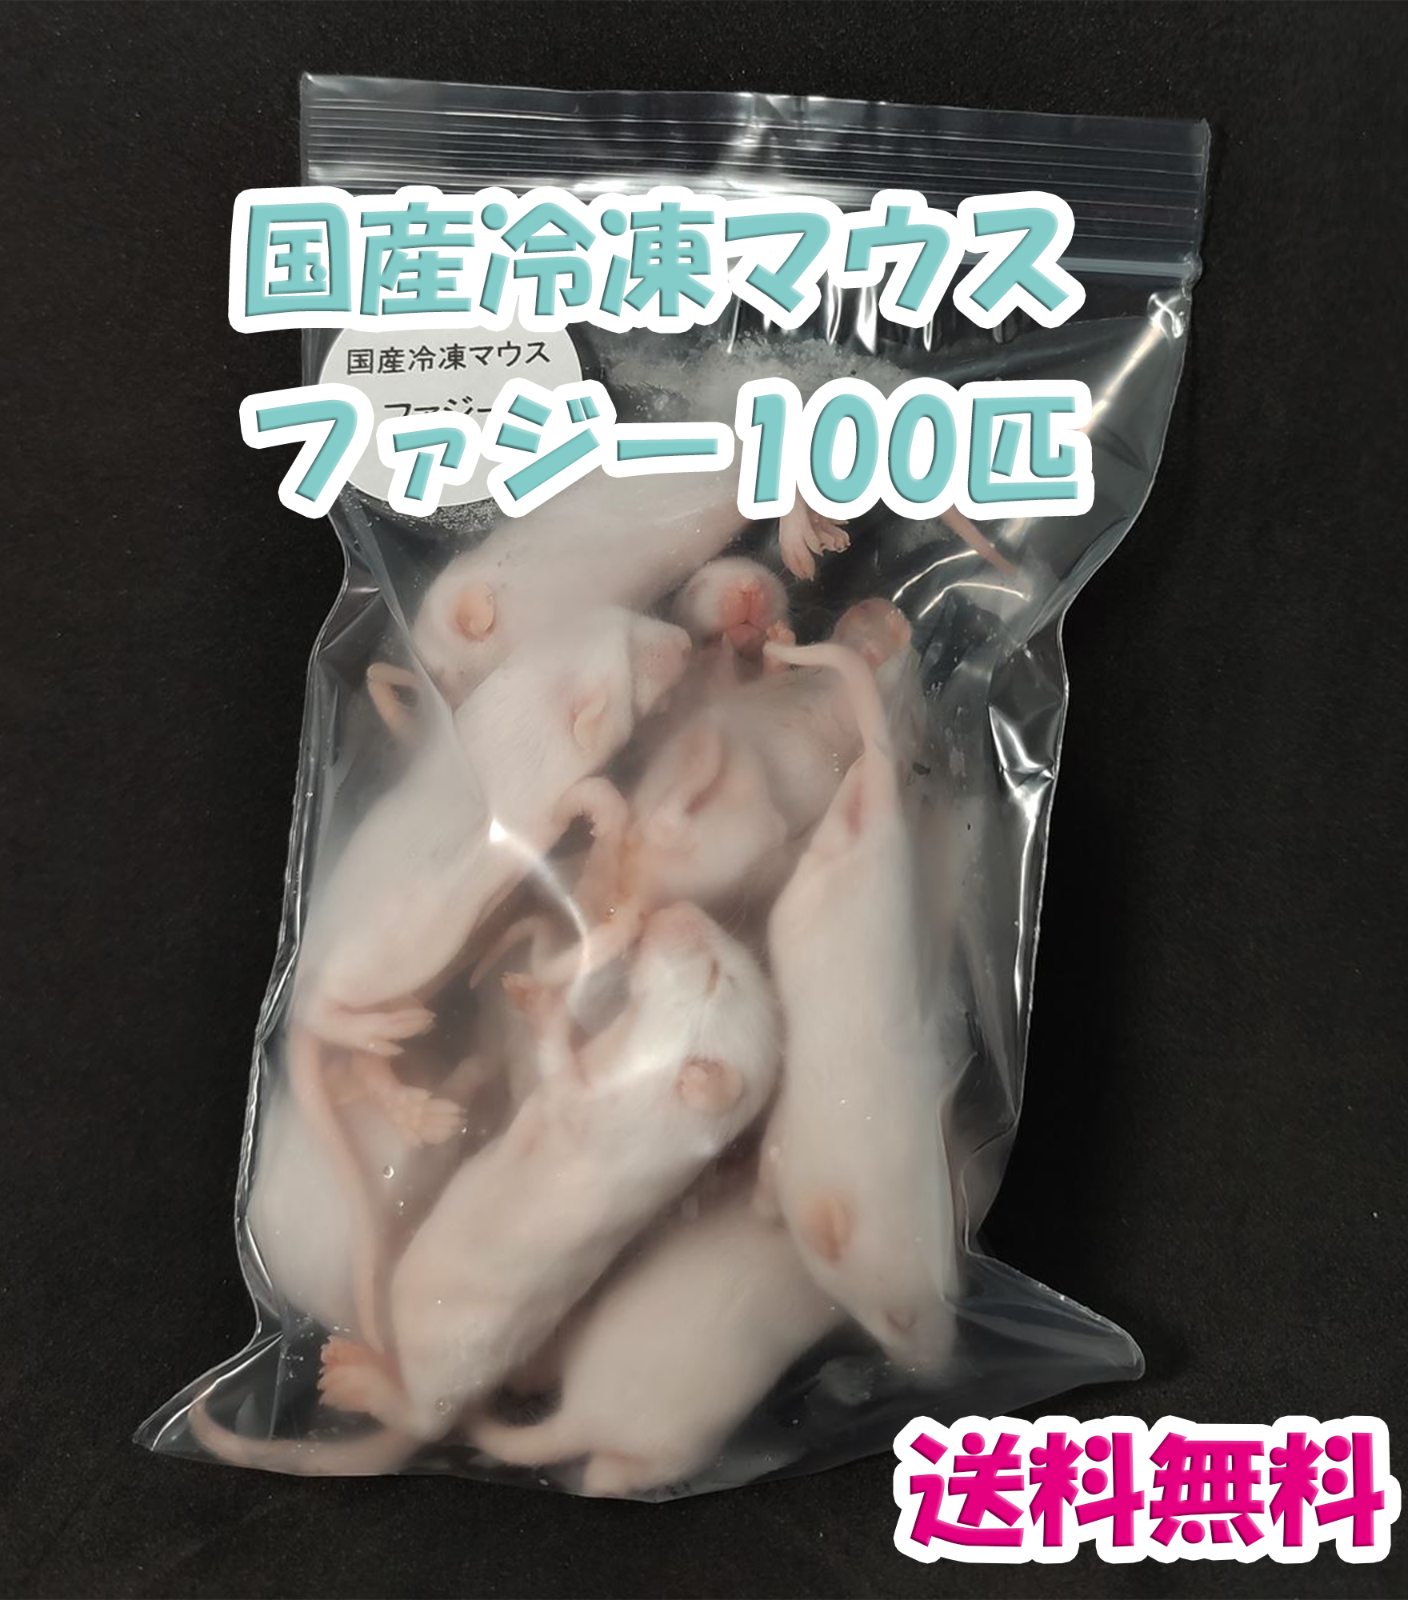 とっておきし新春福袋 国産冷凍マウス ファジー100匹 爬虫類 | mkc.mk